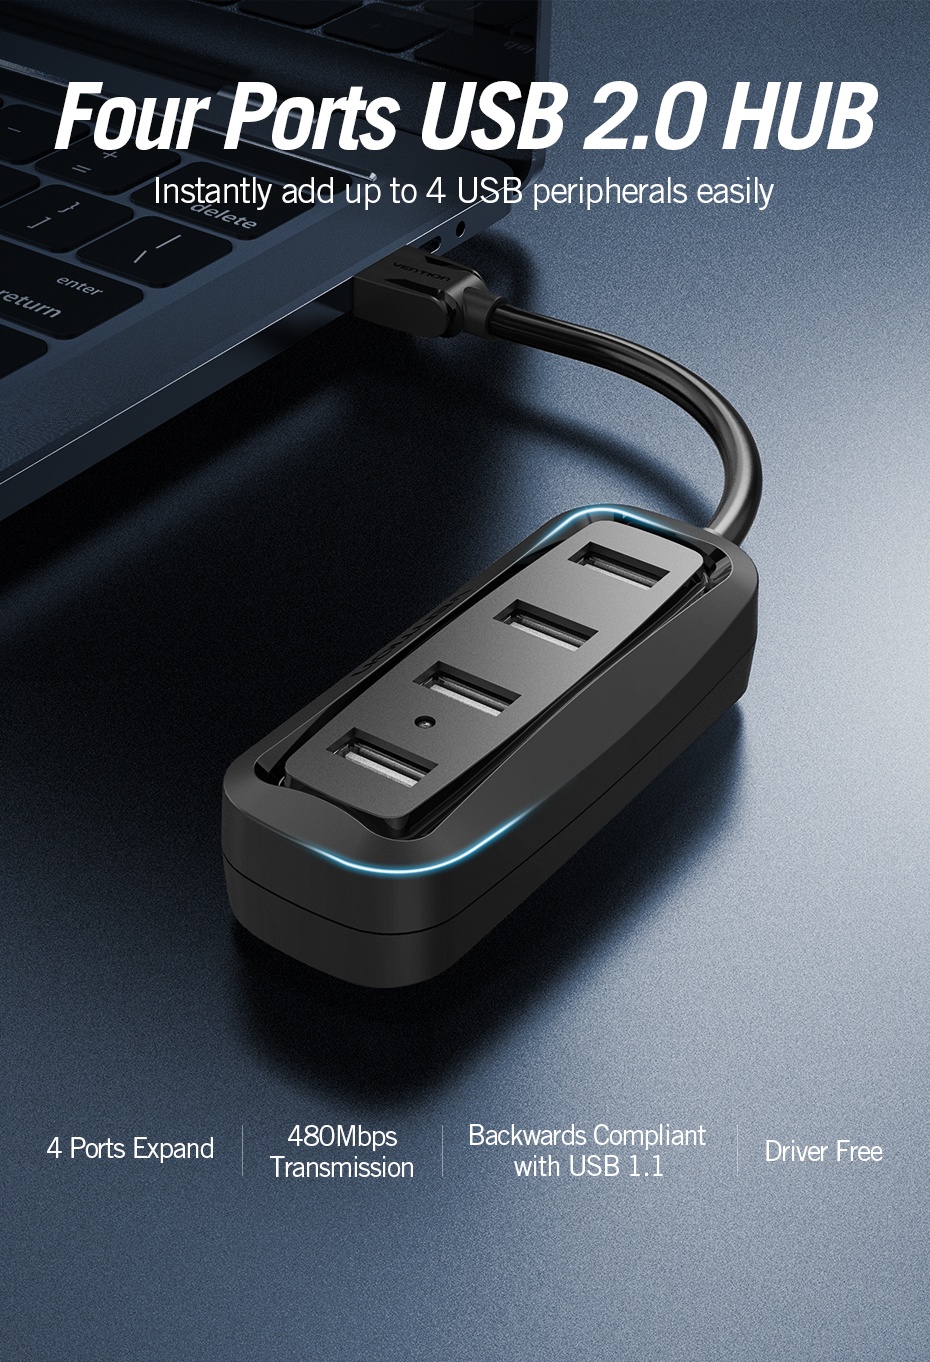 ภาพที่ให้รายละเอียดเกี่ยวกับ Vention ฮับ USB 2.0 ความเร็วสูง มี 4 พอร์ต ฮับ USB เชื่อมต่อจากด้านบน สำหรับพีซี แล็ปท็อป คอมพิวเตอร์ เครื่องอ่านบัตร เมาส์ คีย์บอร์ด